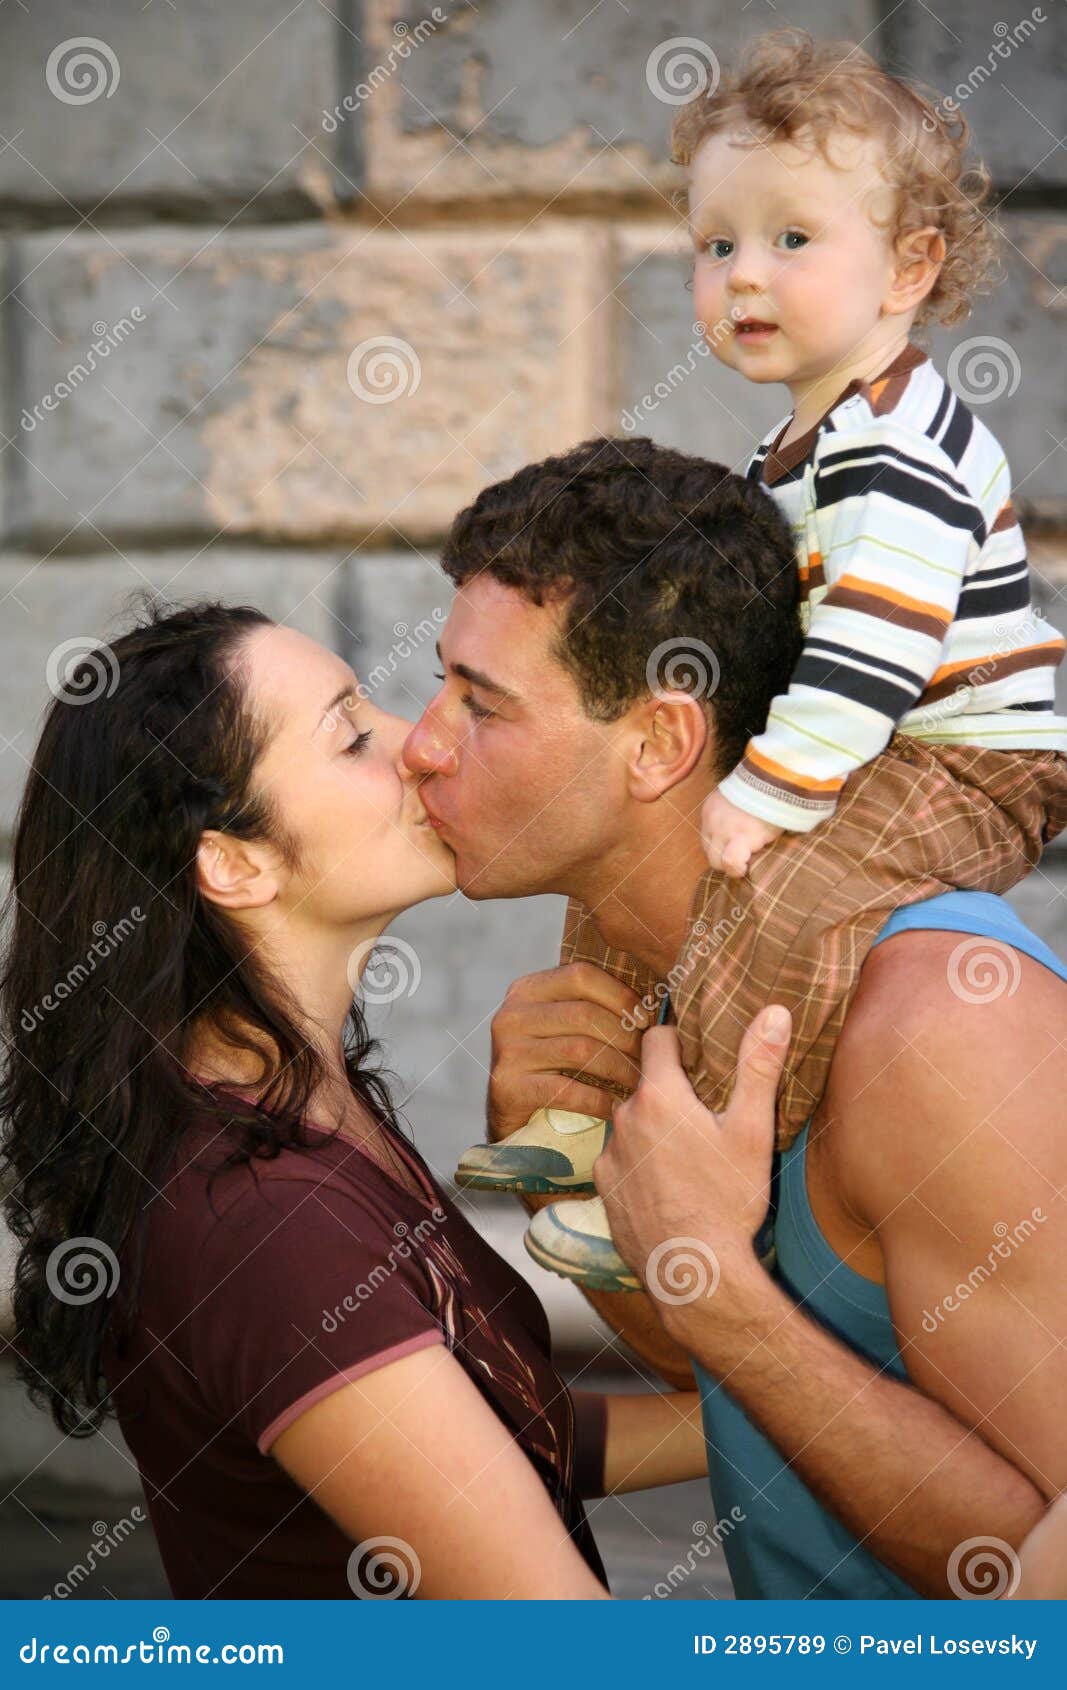 Мама папа поцелуй. Поцелуй при детях. Мама и папа поцелуй. Папа целует маму. Мама и папа целуются.